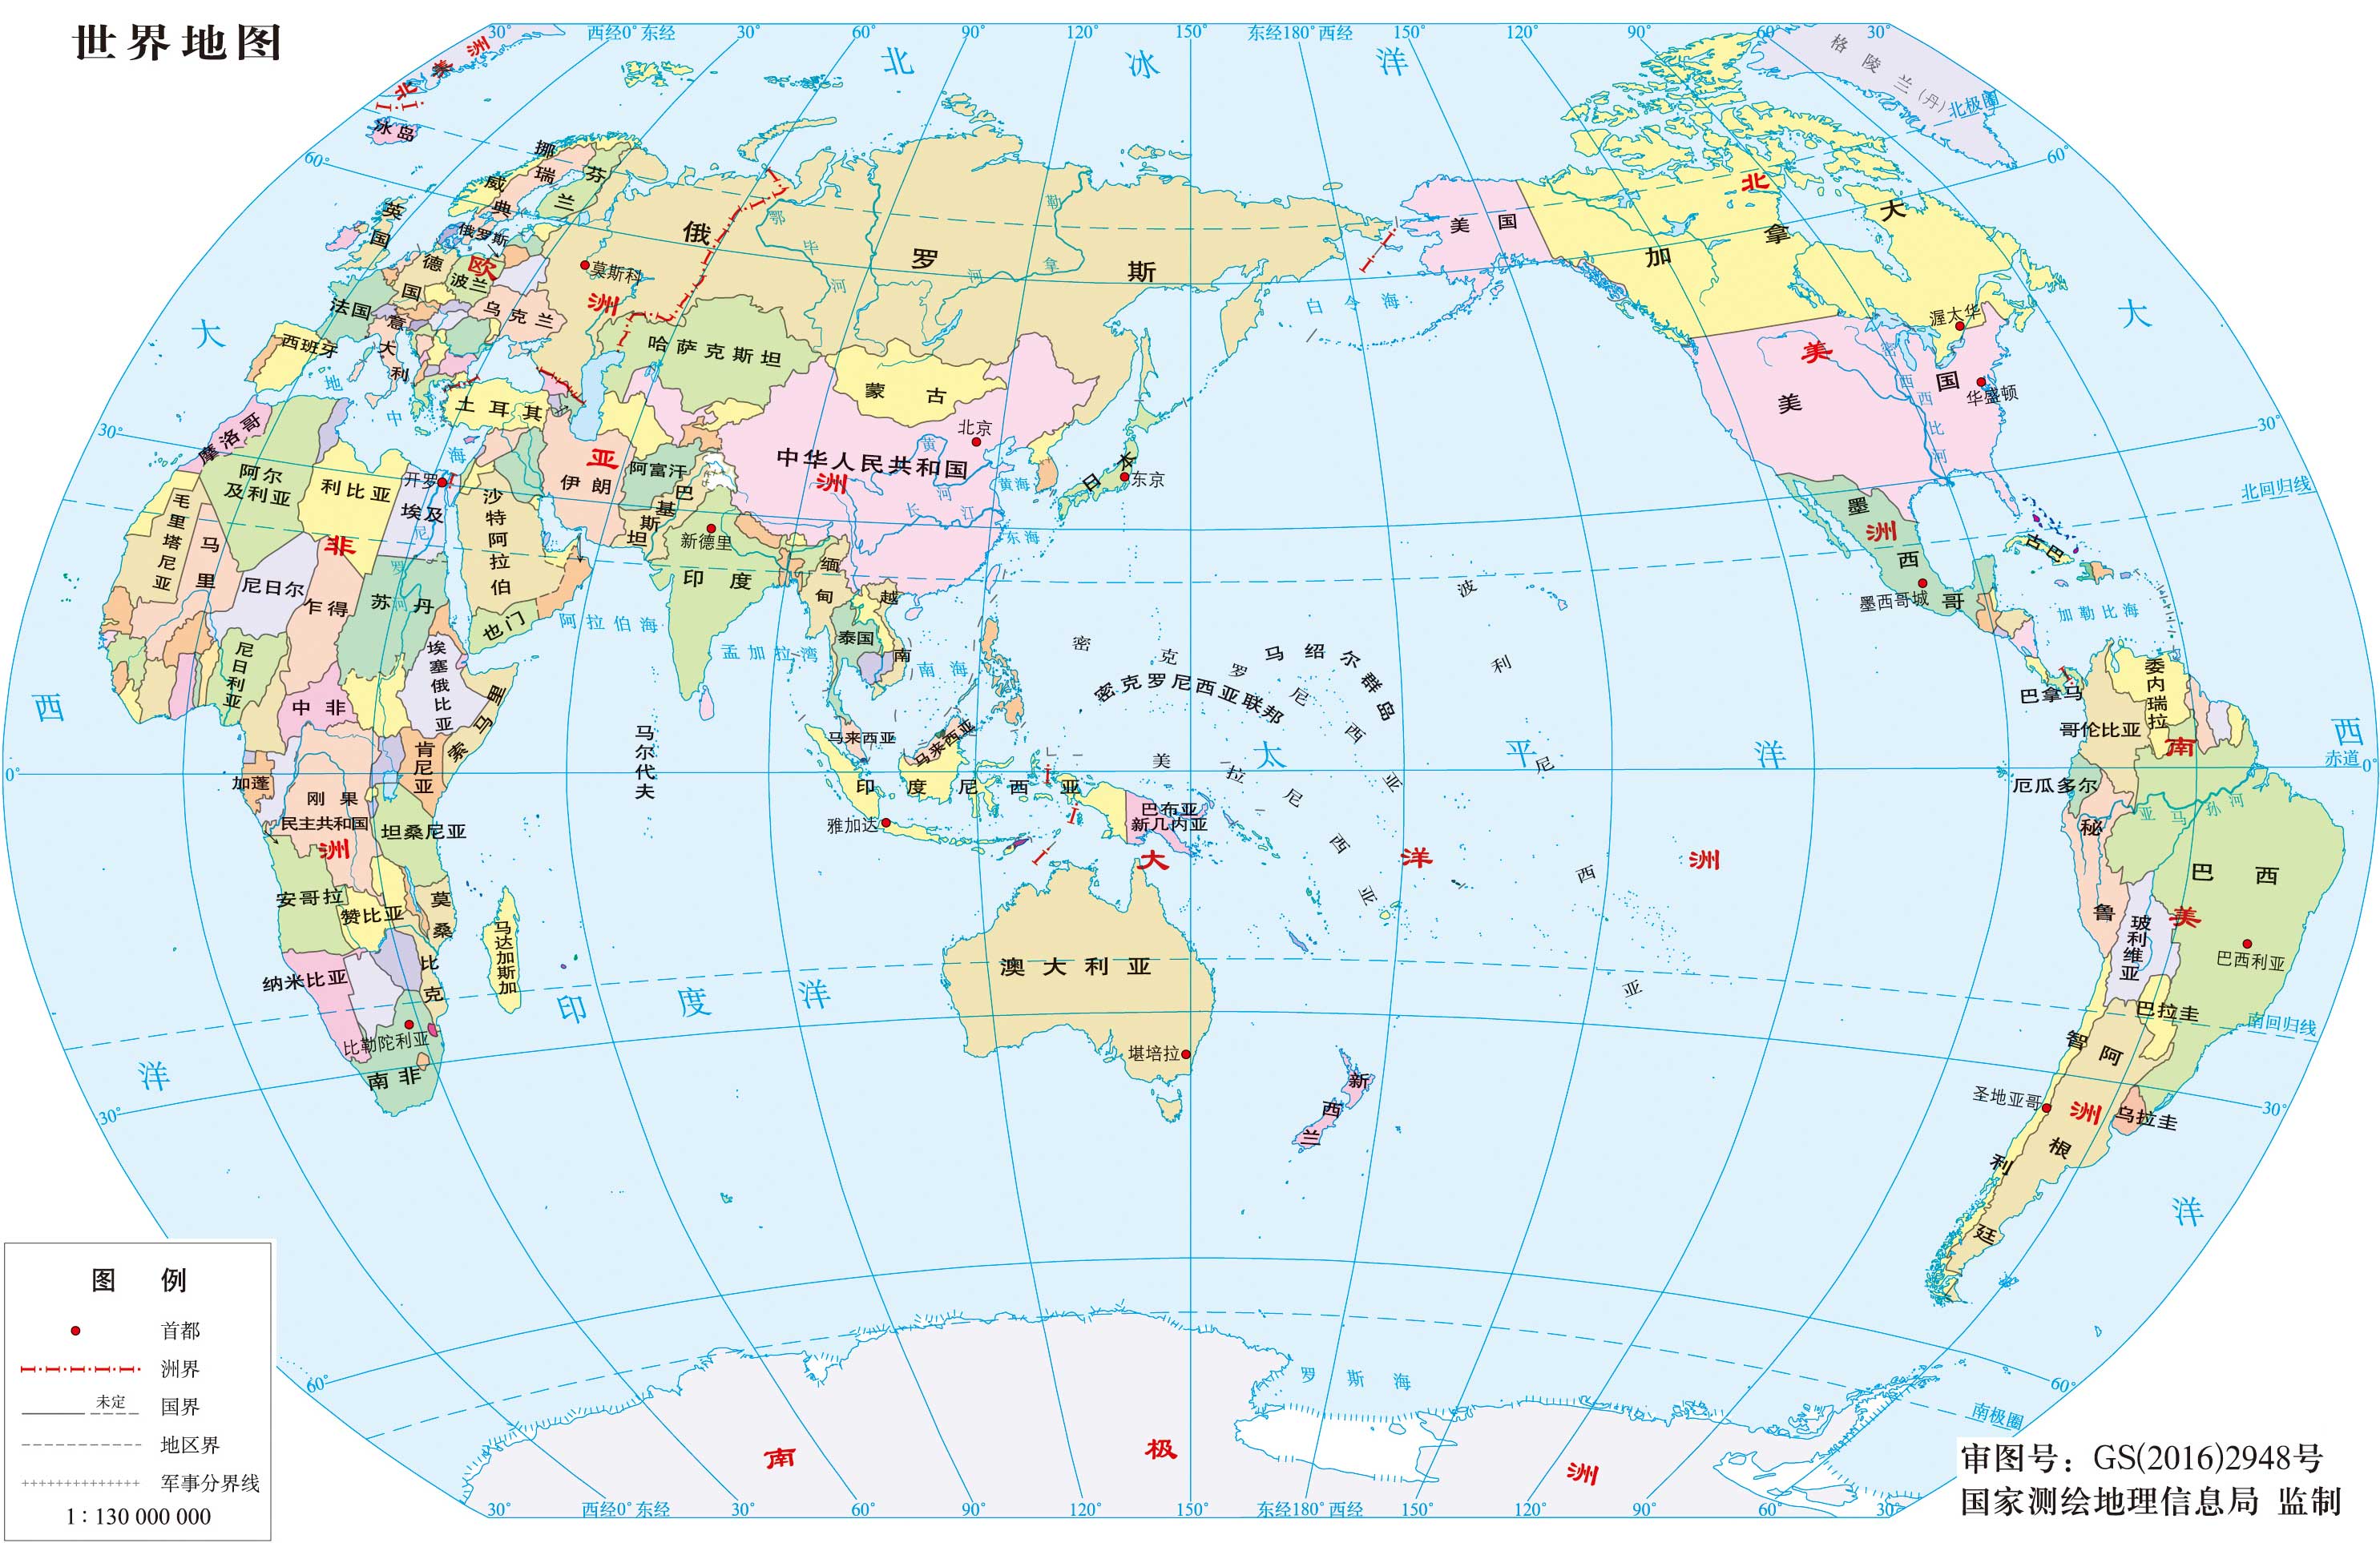 地图库 世界地图 >> 世界地图中文版  栏目导航:世界地图  中国地图